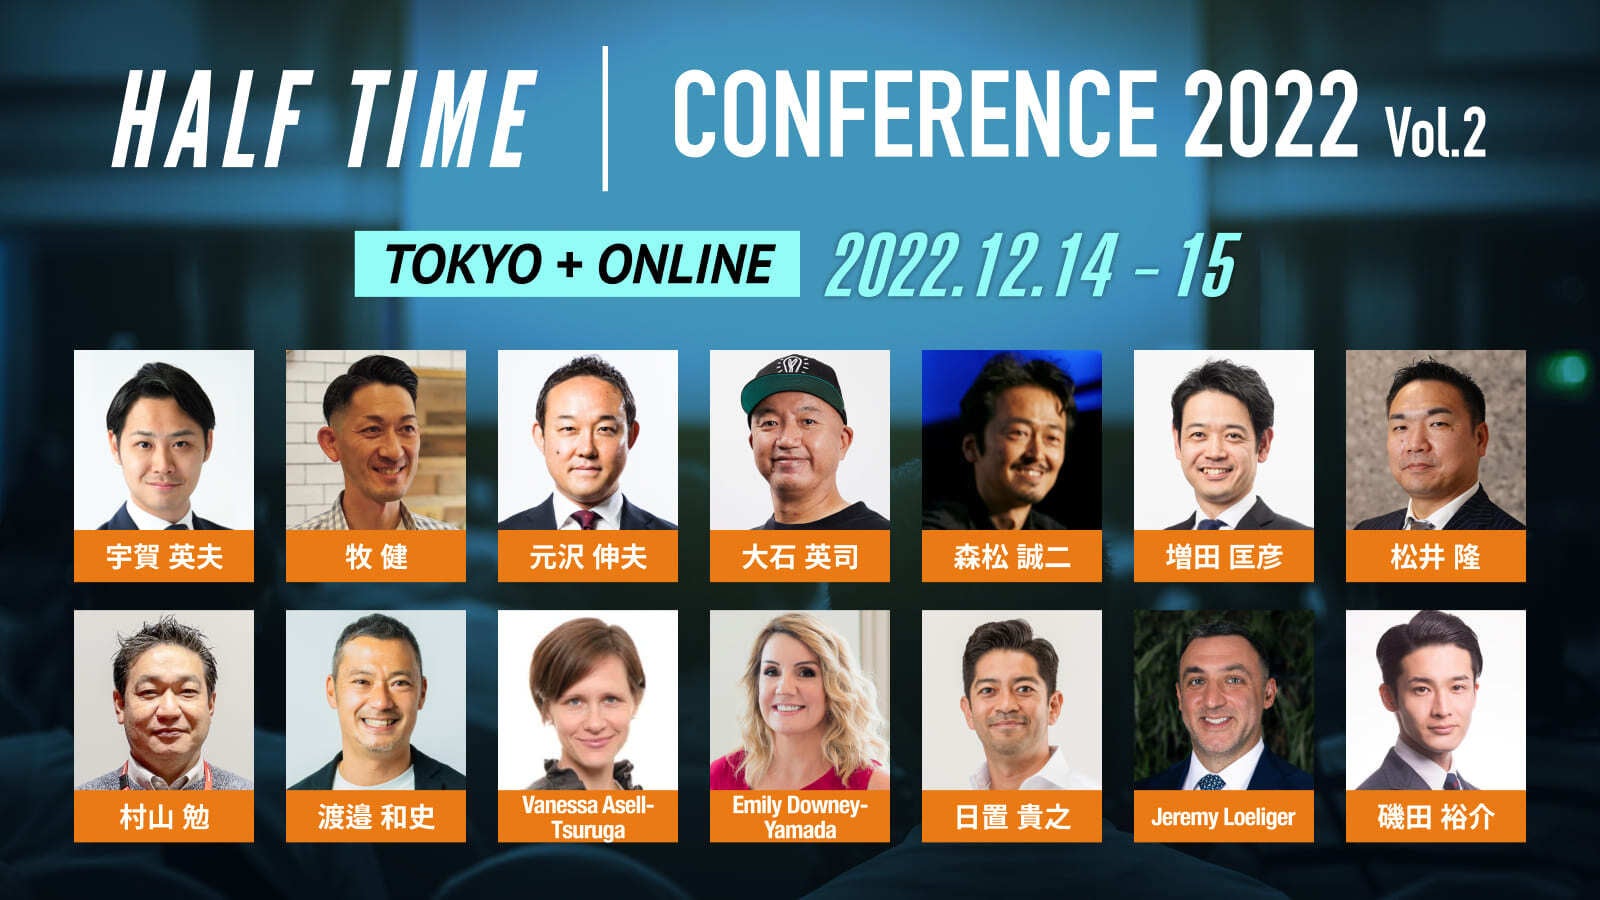 スポーツビジネスカンファレンス「HALF TIMEカンファレンス」 12月14日(水)-15(木)に東京会場とオンラインで開催のサブ画像1